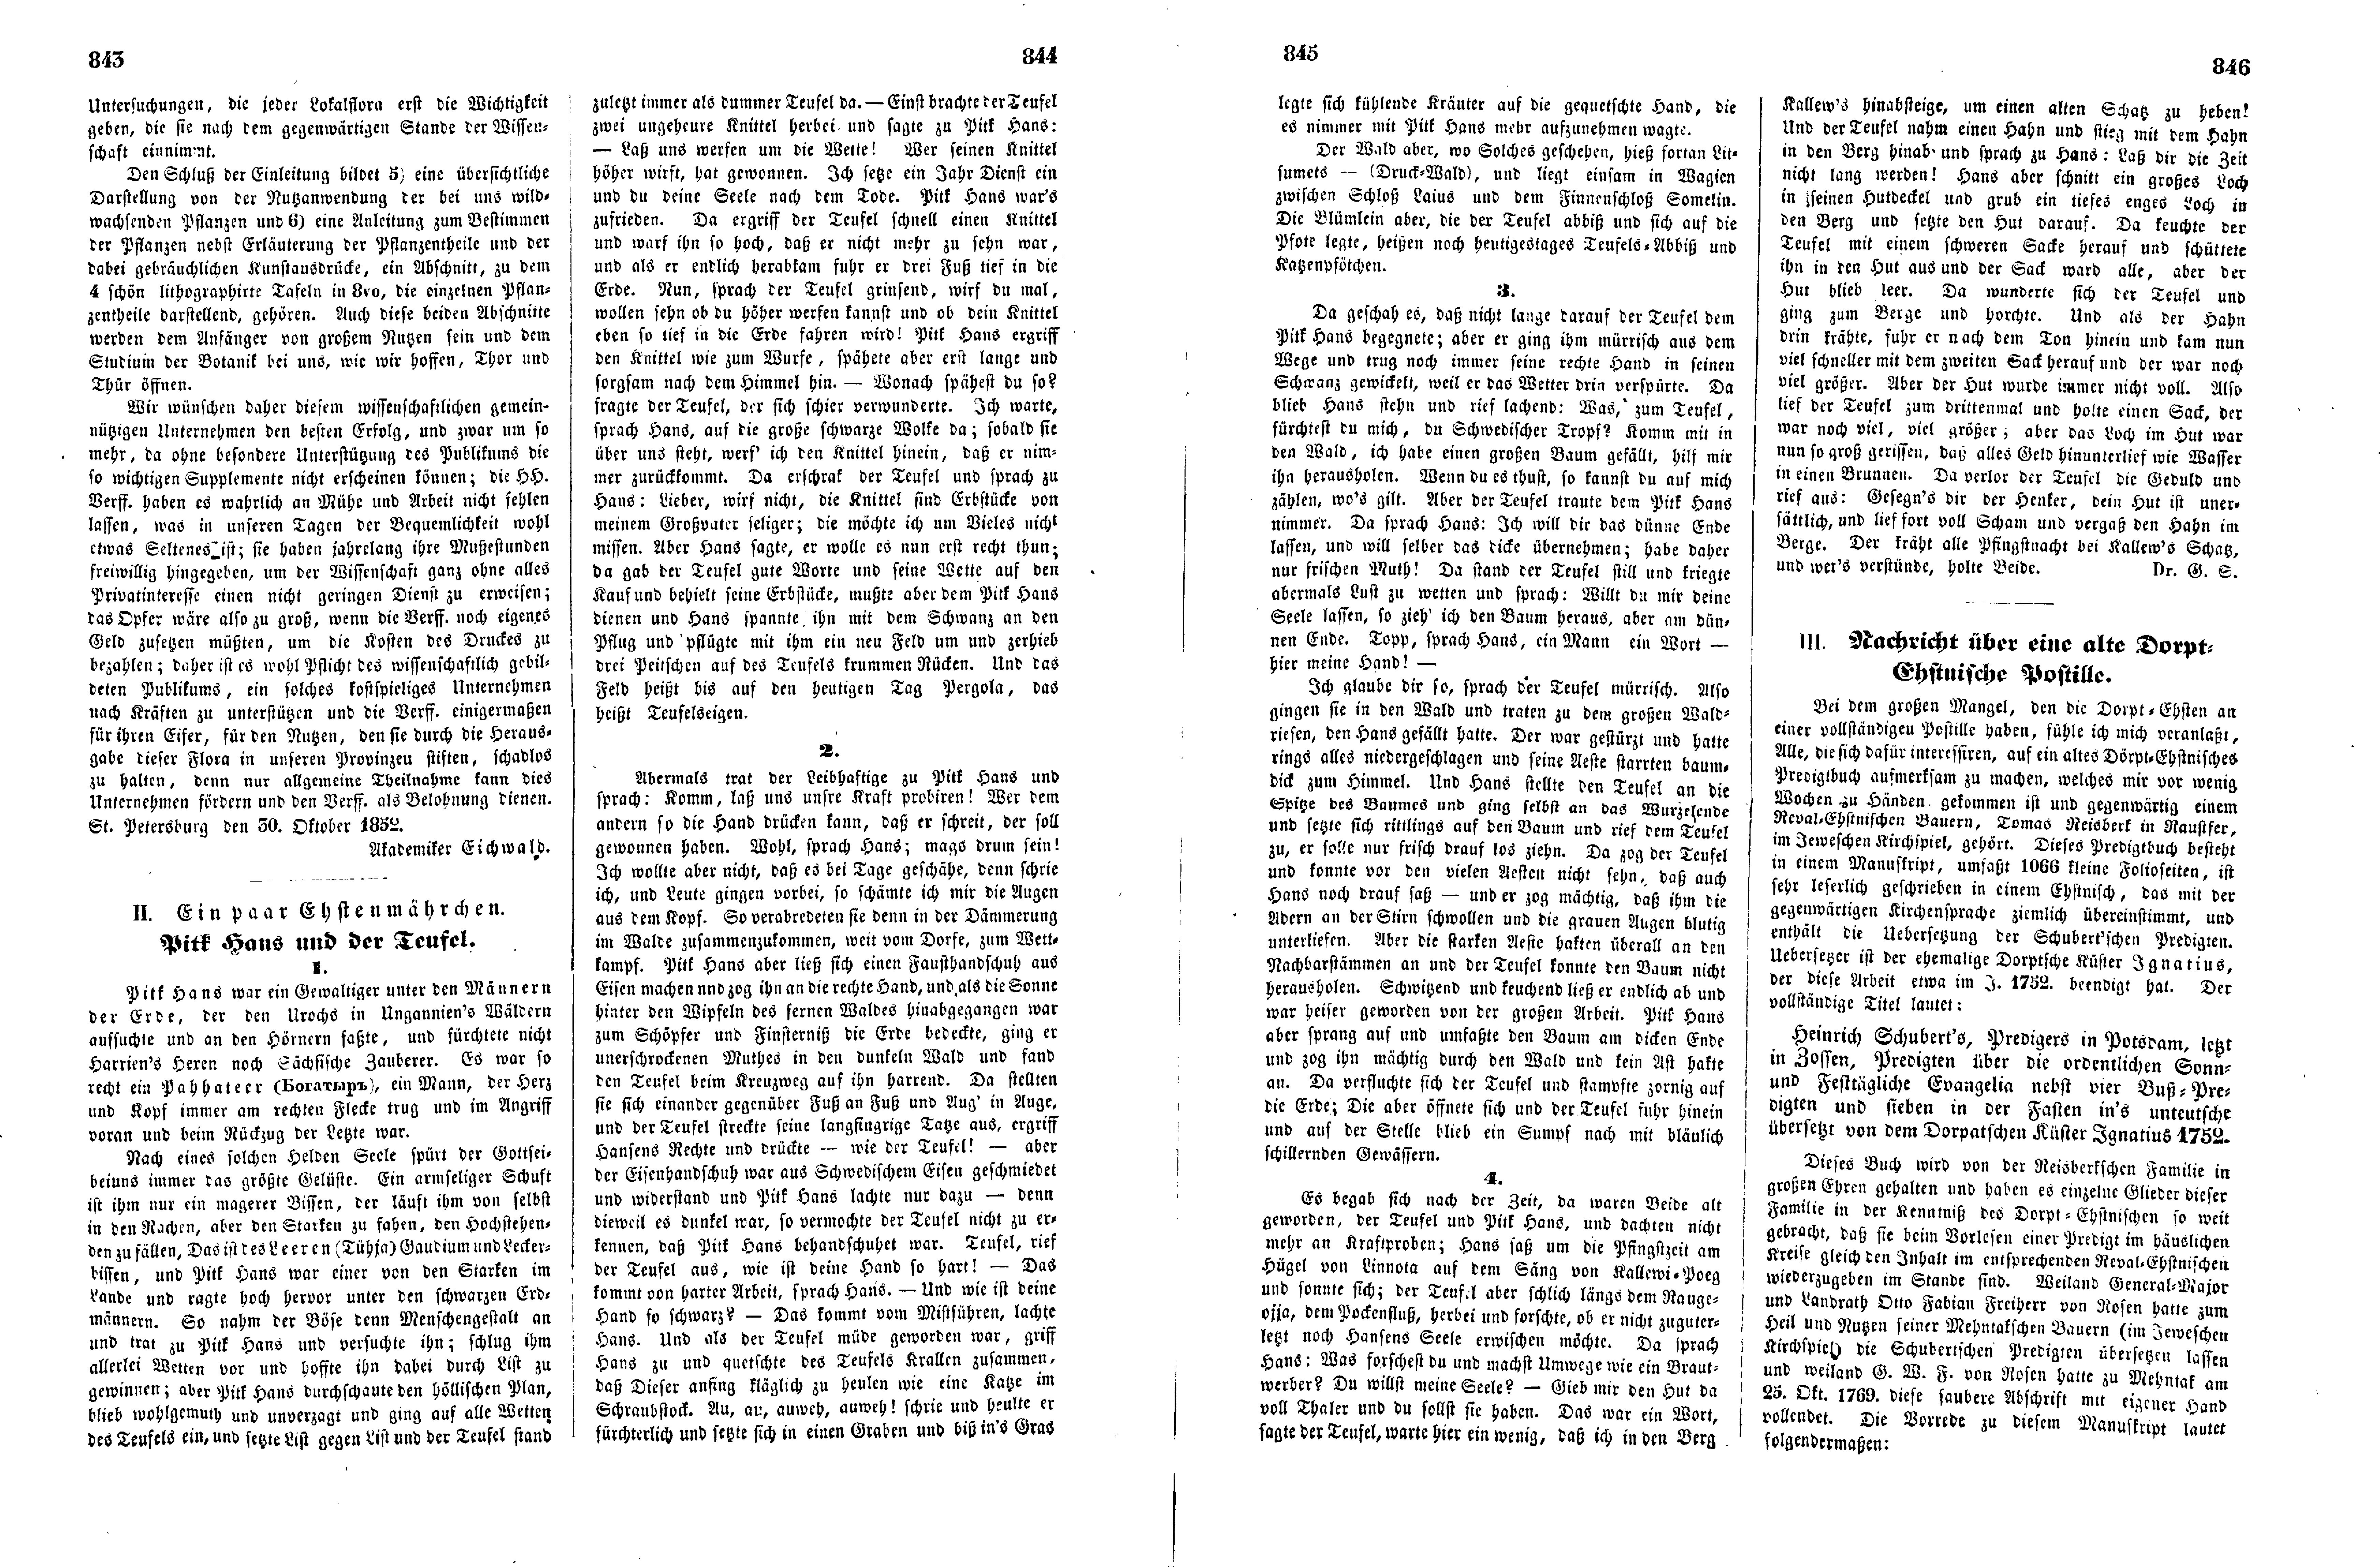 Pitk Hans und der Teufel (Ein paar Ehstenmährchen) (1852) | 1. (843-846) Основной текст